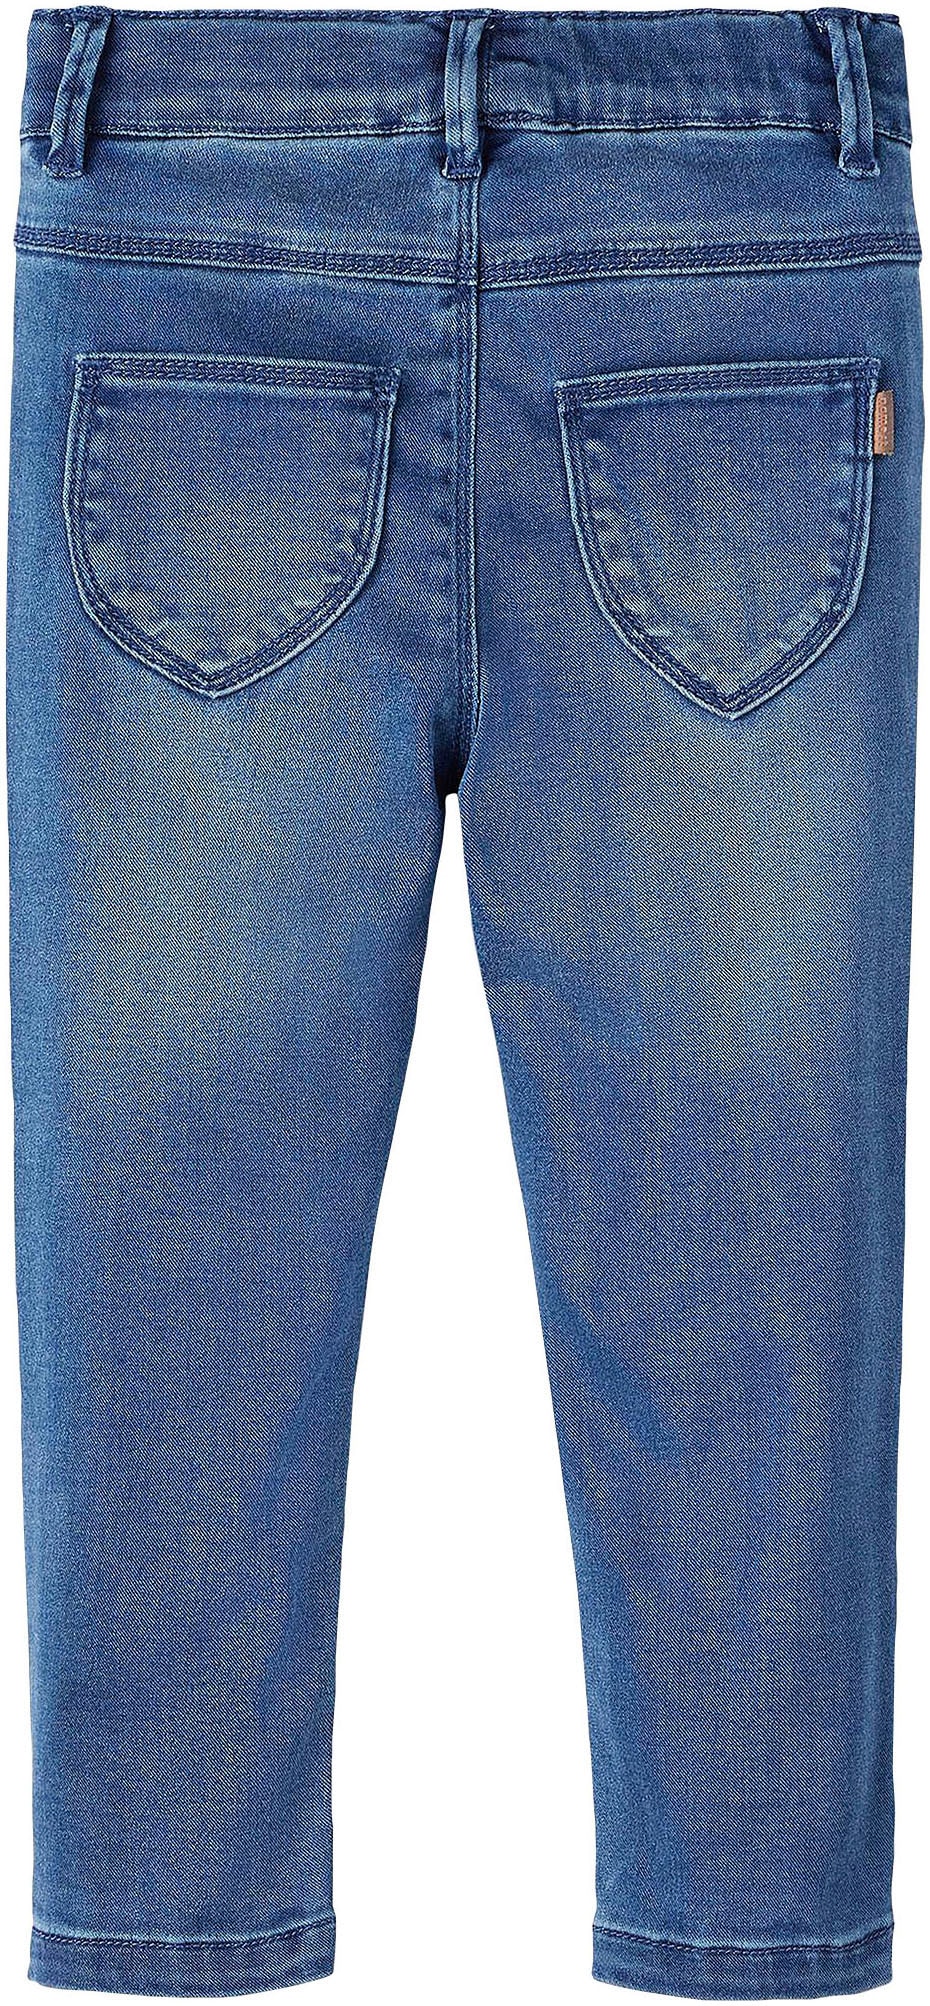 DNM It Name günstig LEGGING Slim-fit-Jeans »NMFSALLI | 1380-TO kaufen NOOS« SLIM